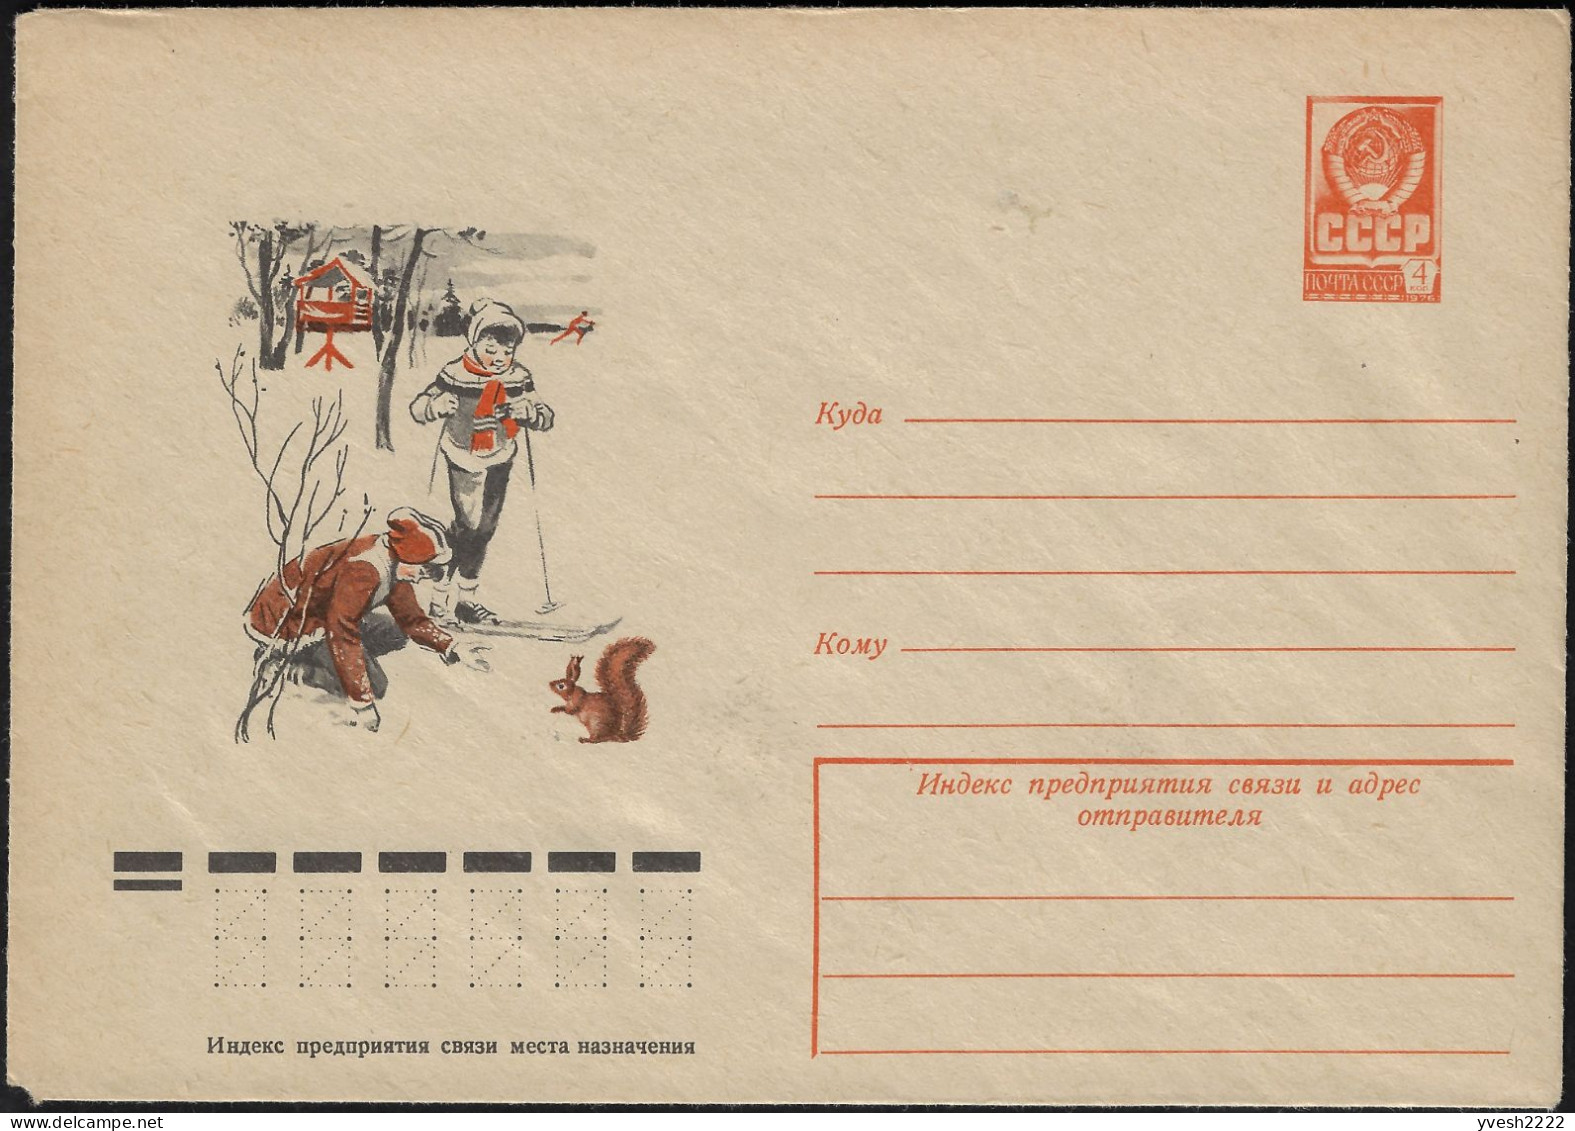 URSS 1977. Entier Postal Enveloppe. Enfants, Ski De Fond, écureuil - Rongeurs